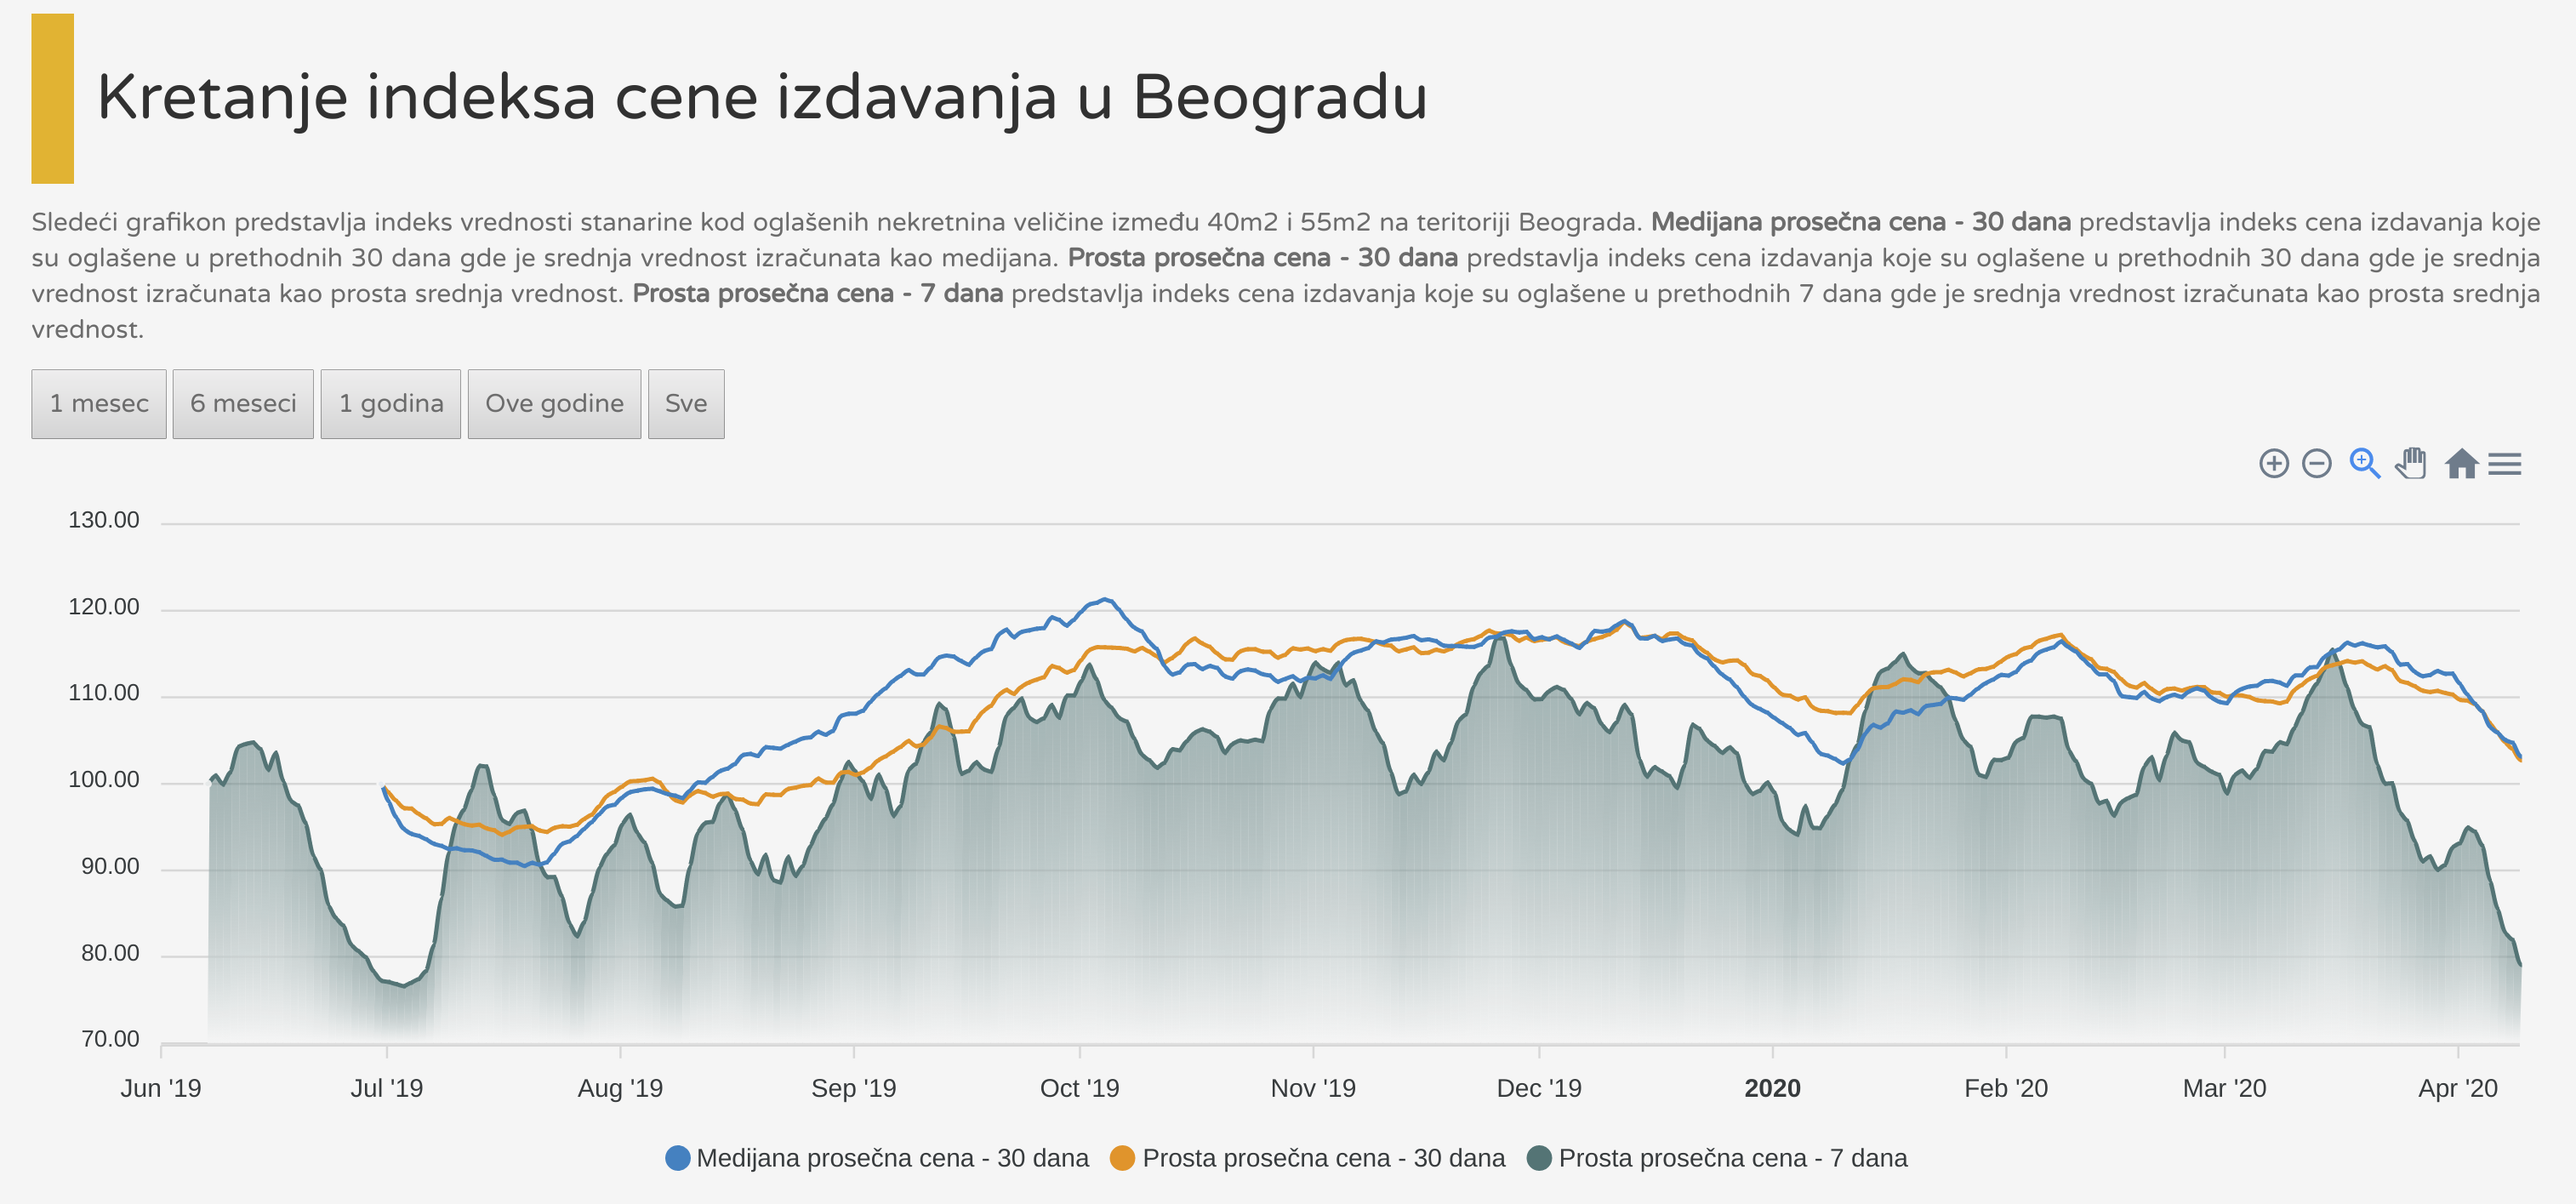 Indeks cene izdavanja Beograd